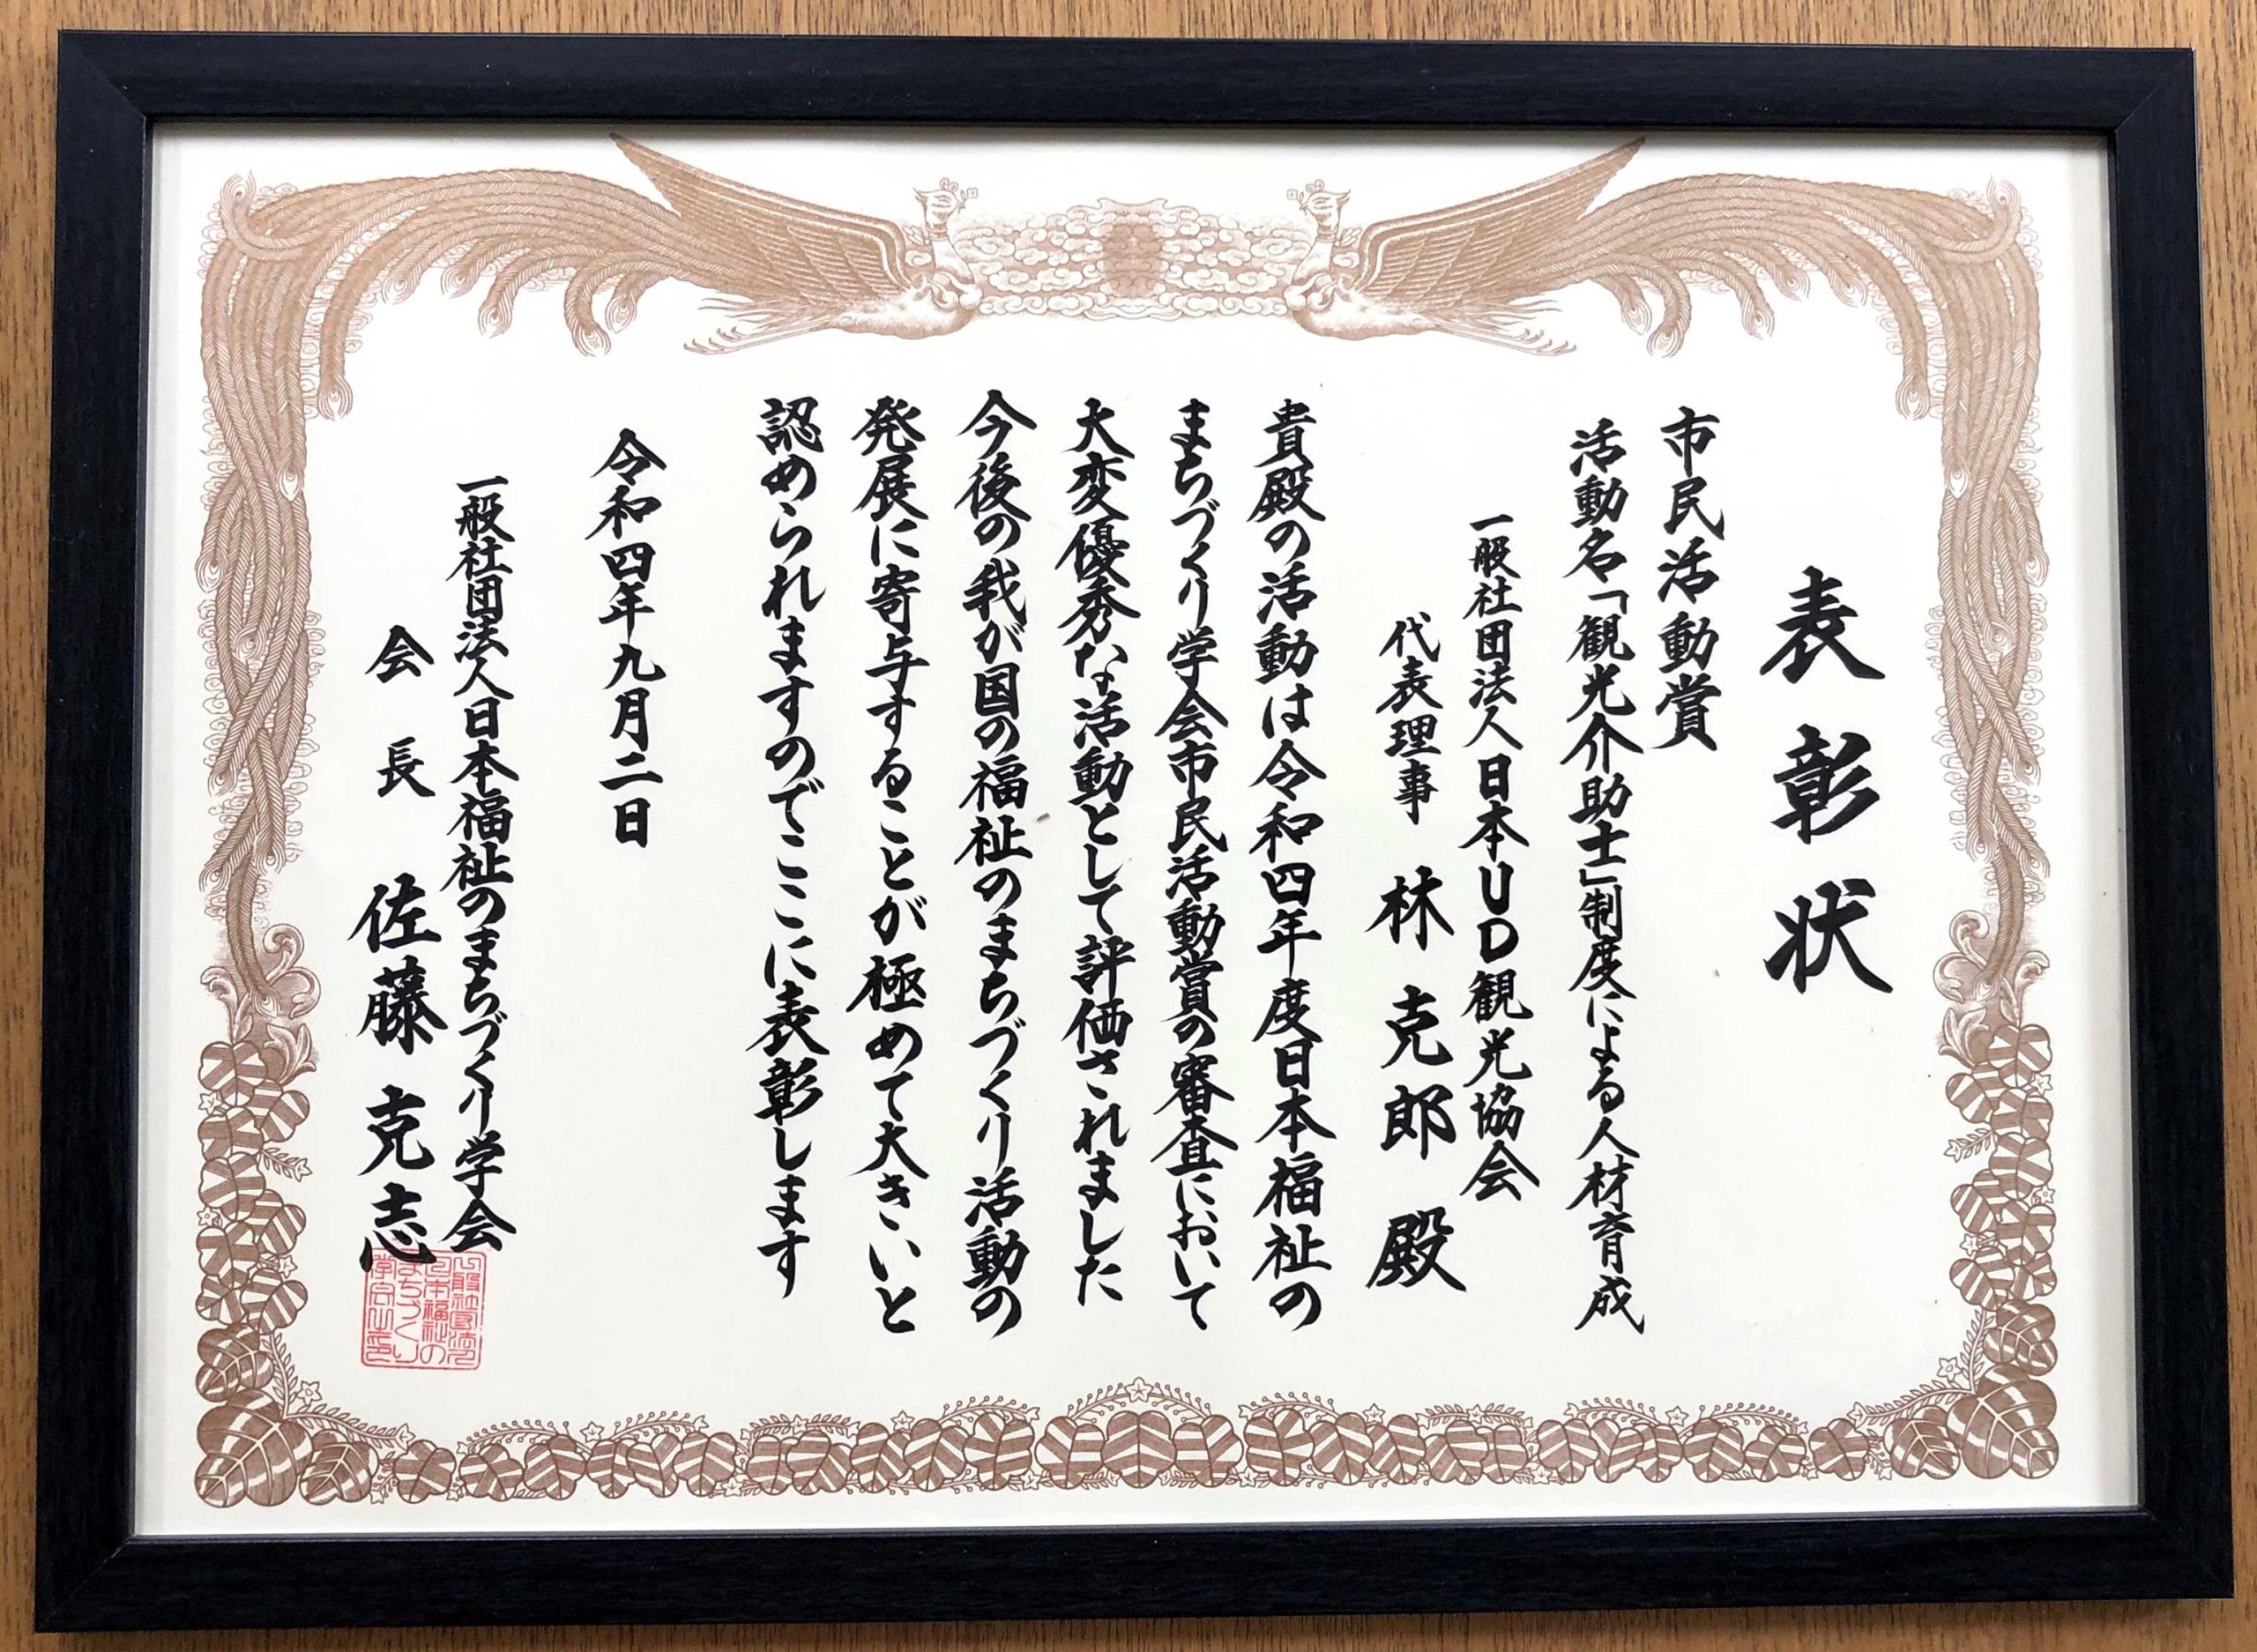 一般社団法人 日本福祉のまちづくり学会　市民活動賞表彰状